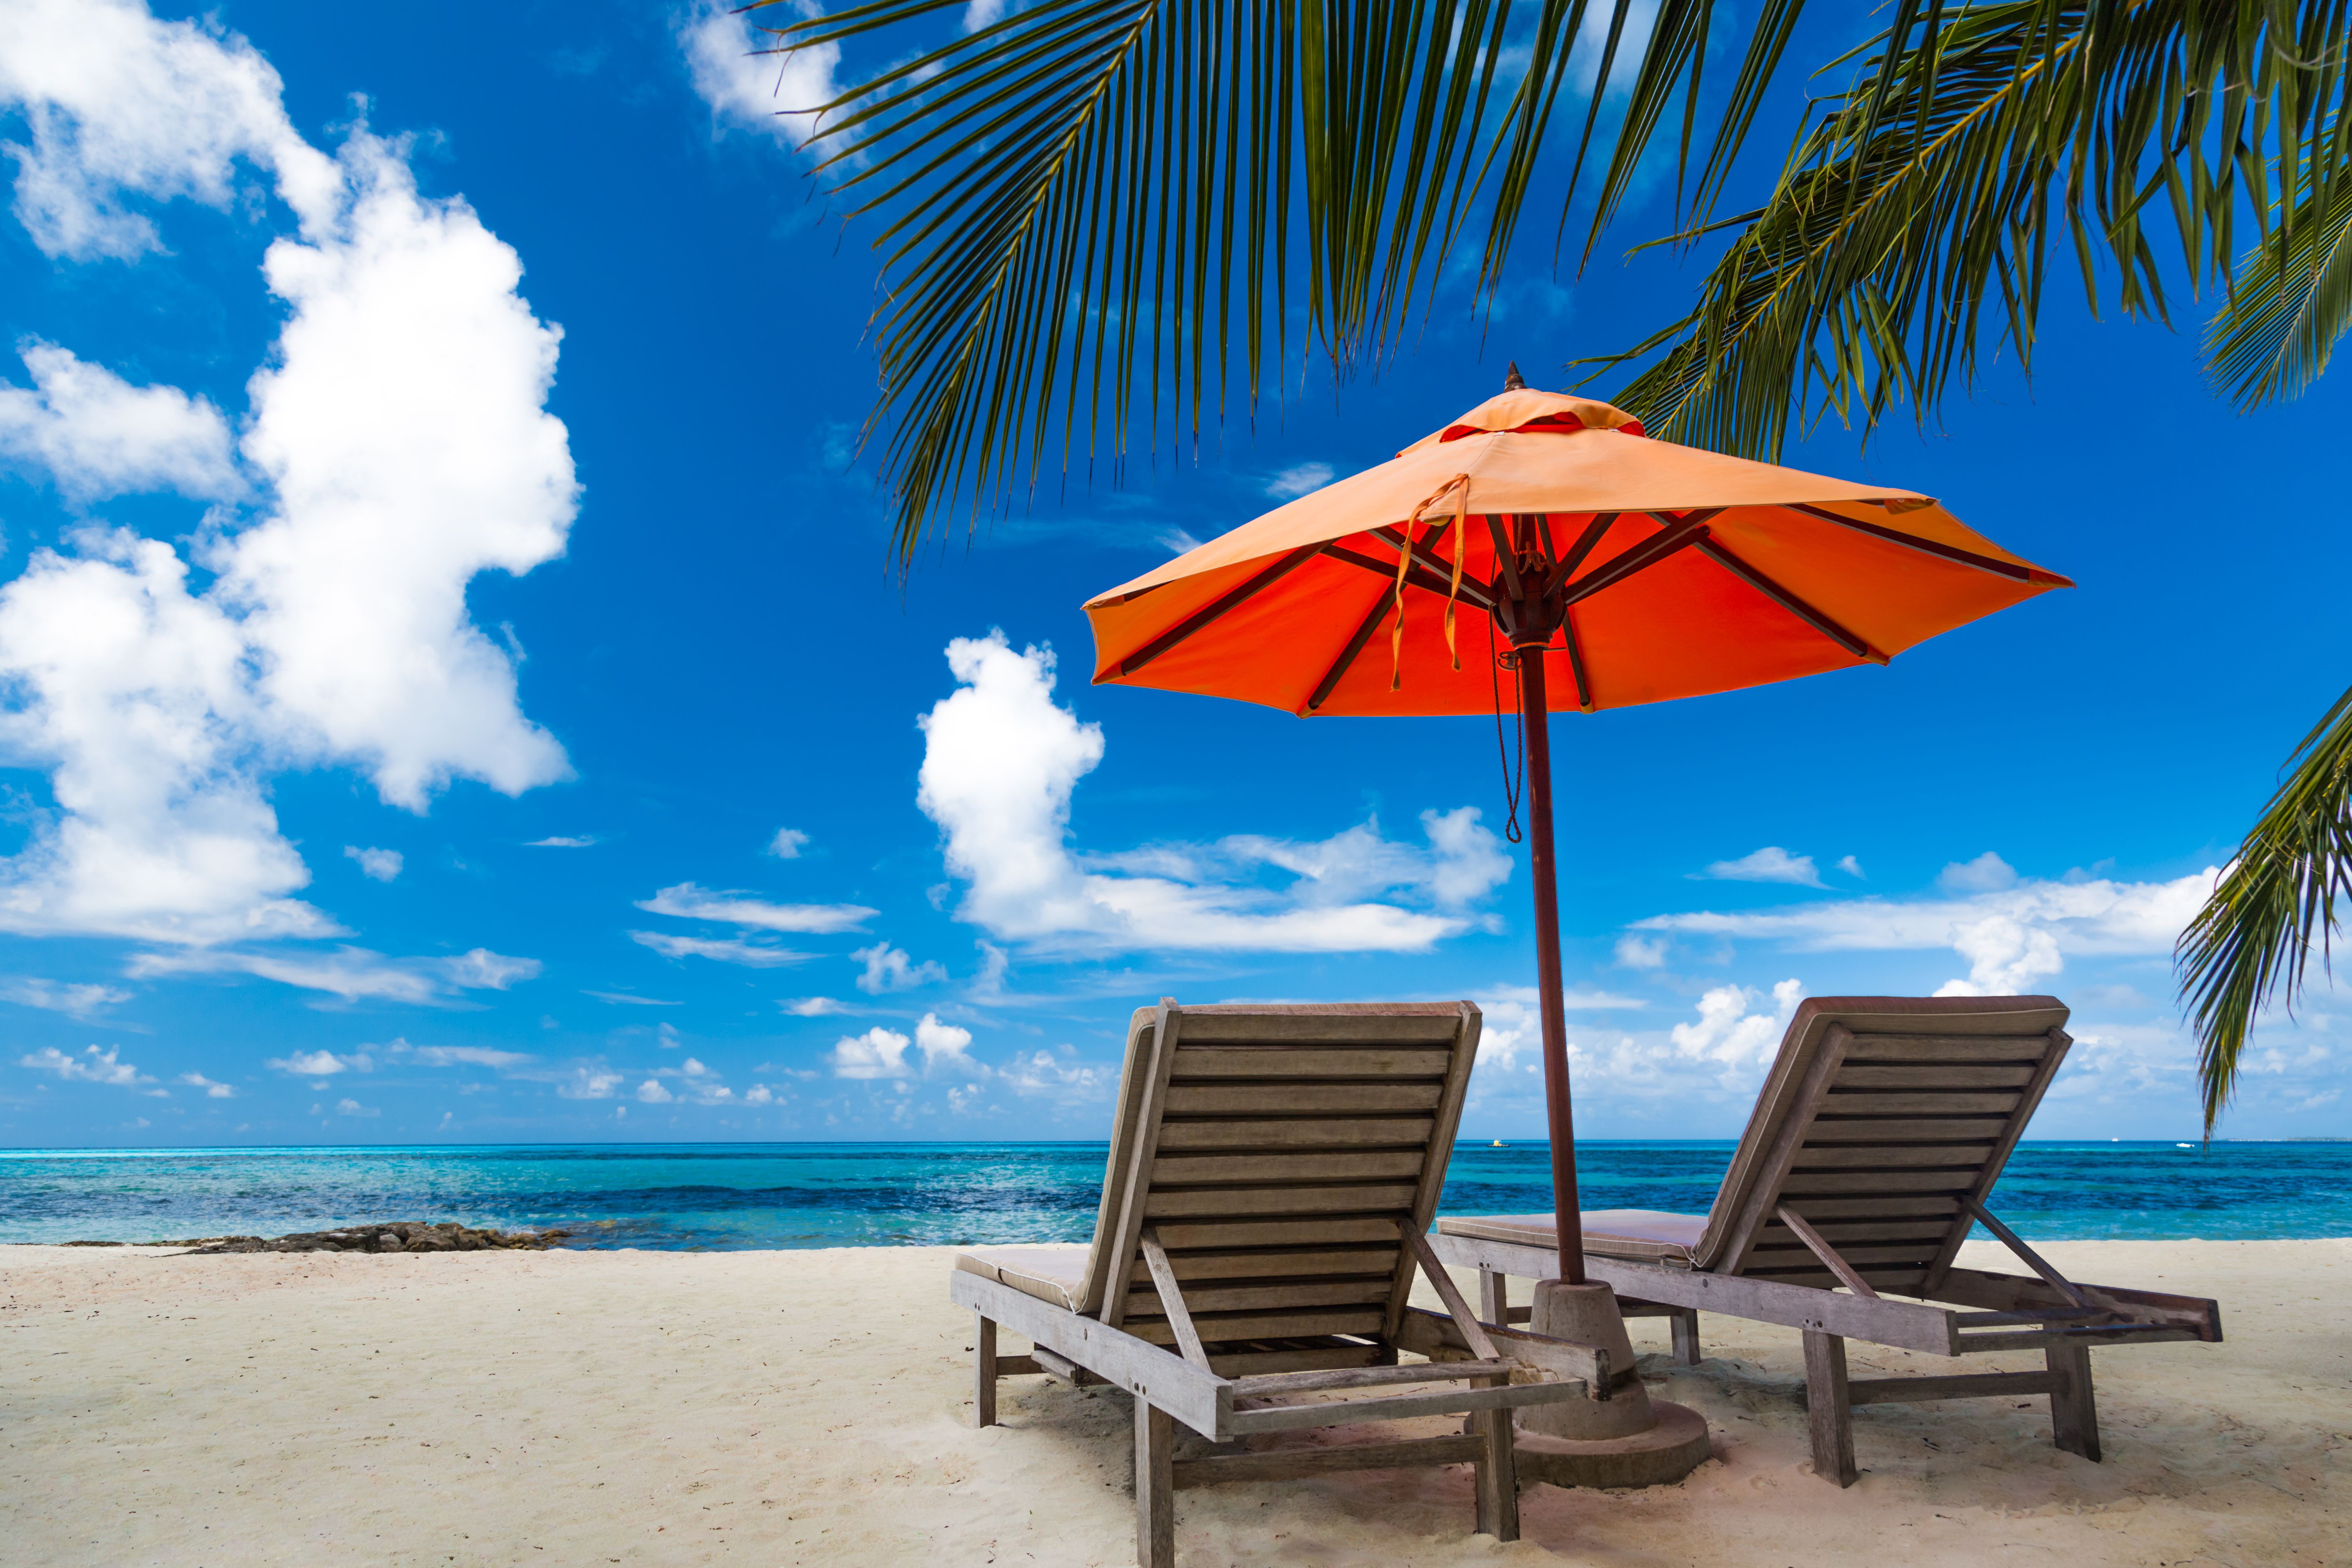 Mooie strandachtergrond voor de zomerreis met zon, kokosnootboom en strand houten bed op zand met mooie blauwe zee en blauwe hemel.  Zomer stemming zon strand achtergrond concept.